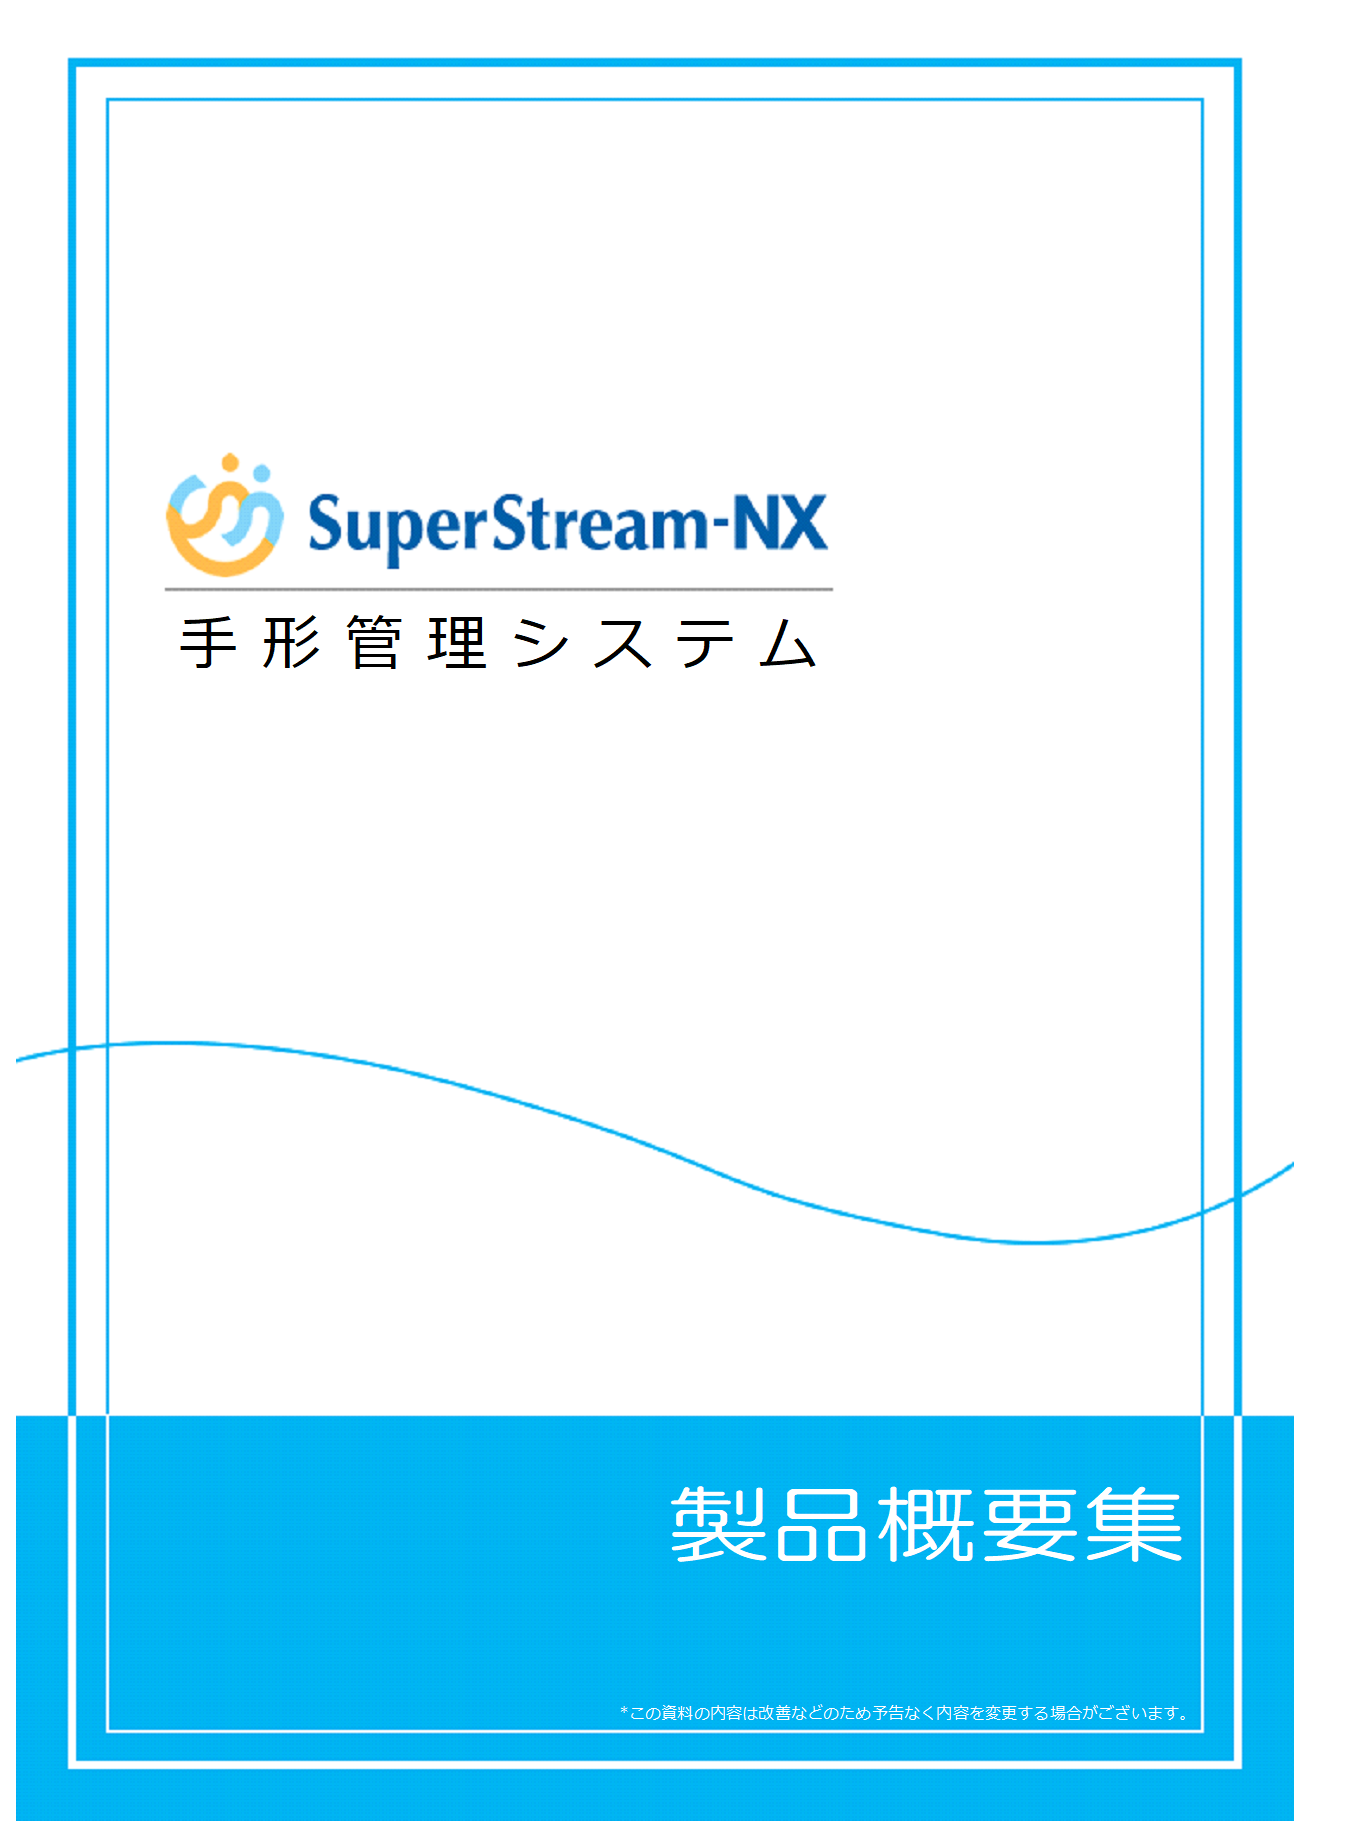 SuperStream-NX 手形管理製品概要集